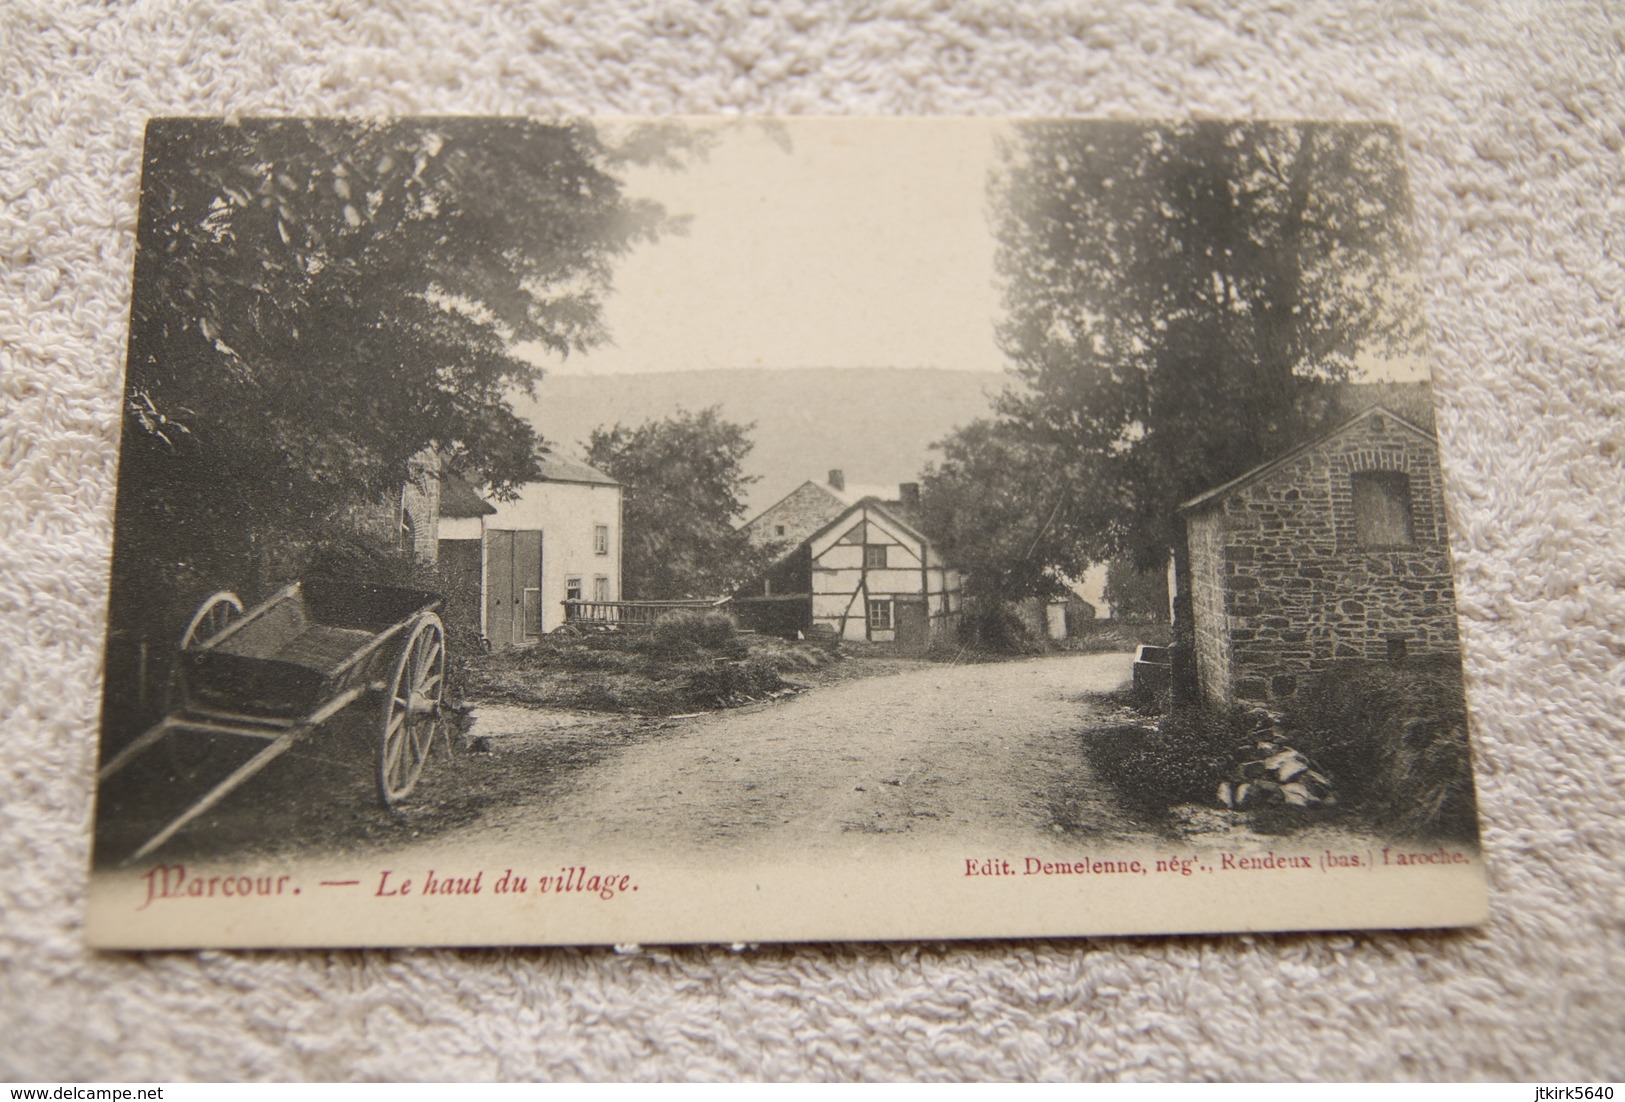 Marcour "Le Haut Du Village" - Rendeux